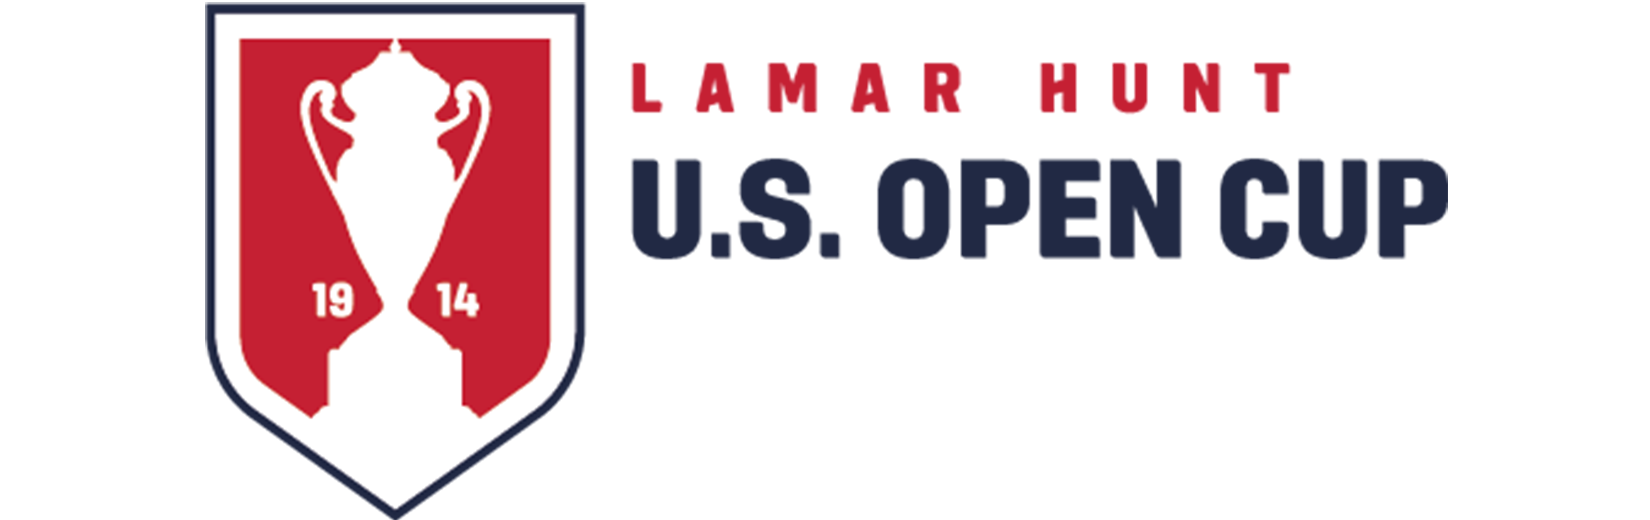 U.S. Open Cup 2020 | U.S. Soccer Official Website